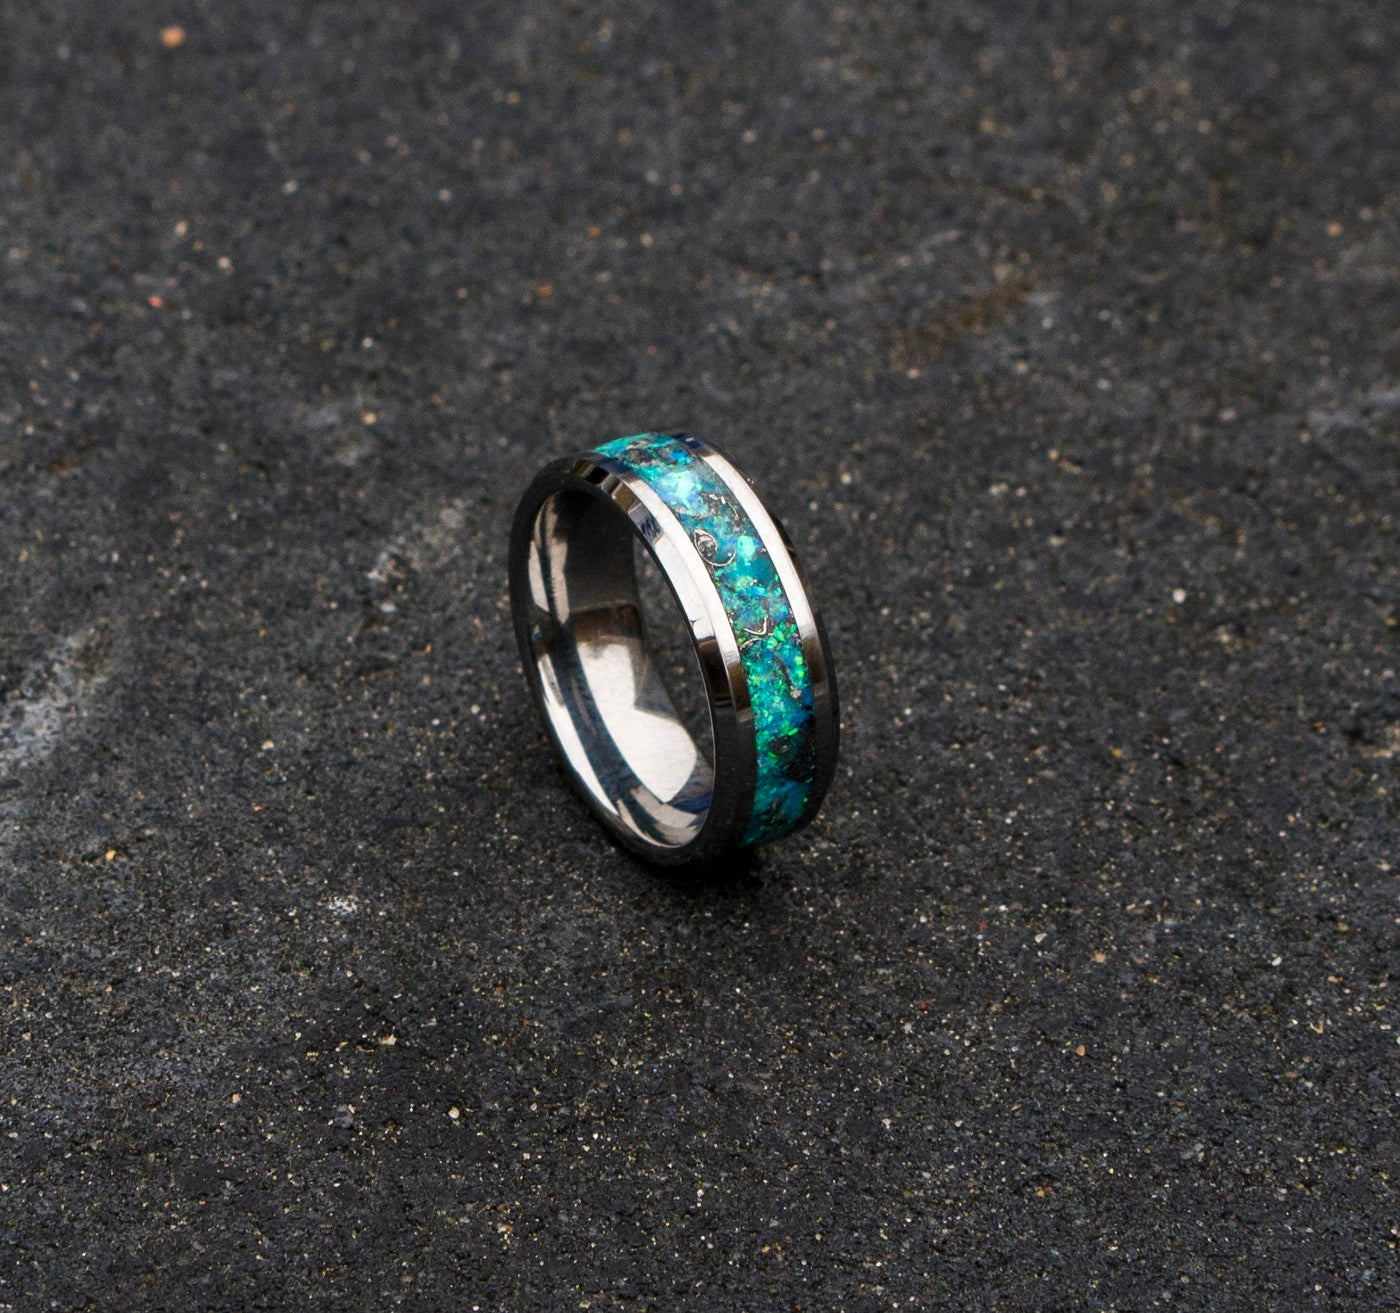 mens tungsten ring. mens opal ring. Tungsten rings. meteorite opal ring. unique opal ring. unique tungsten ring